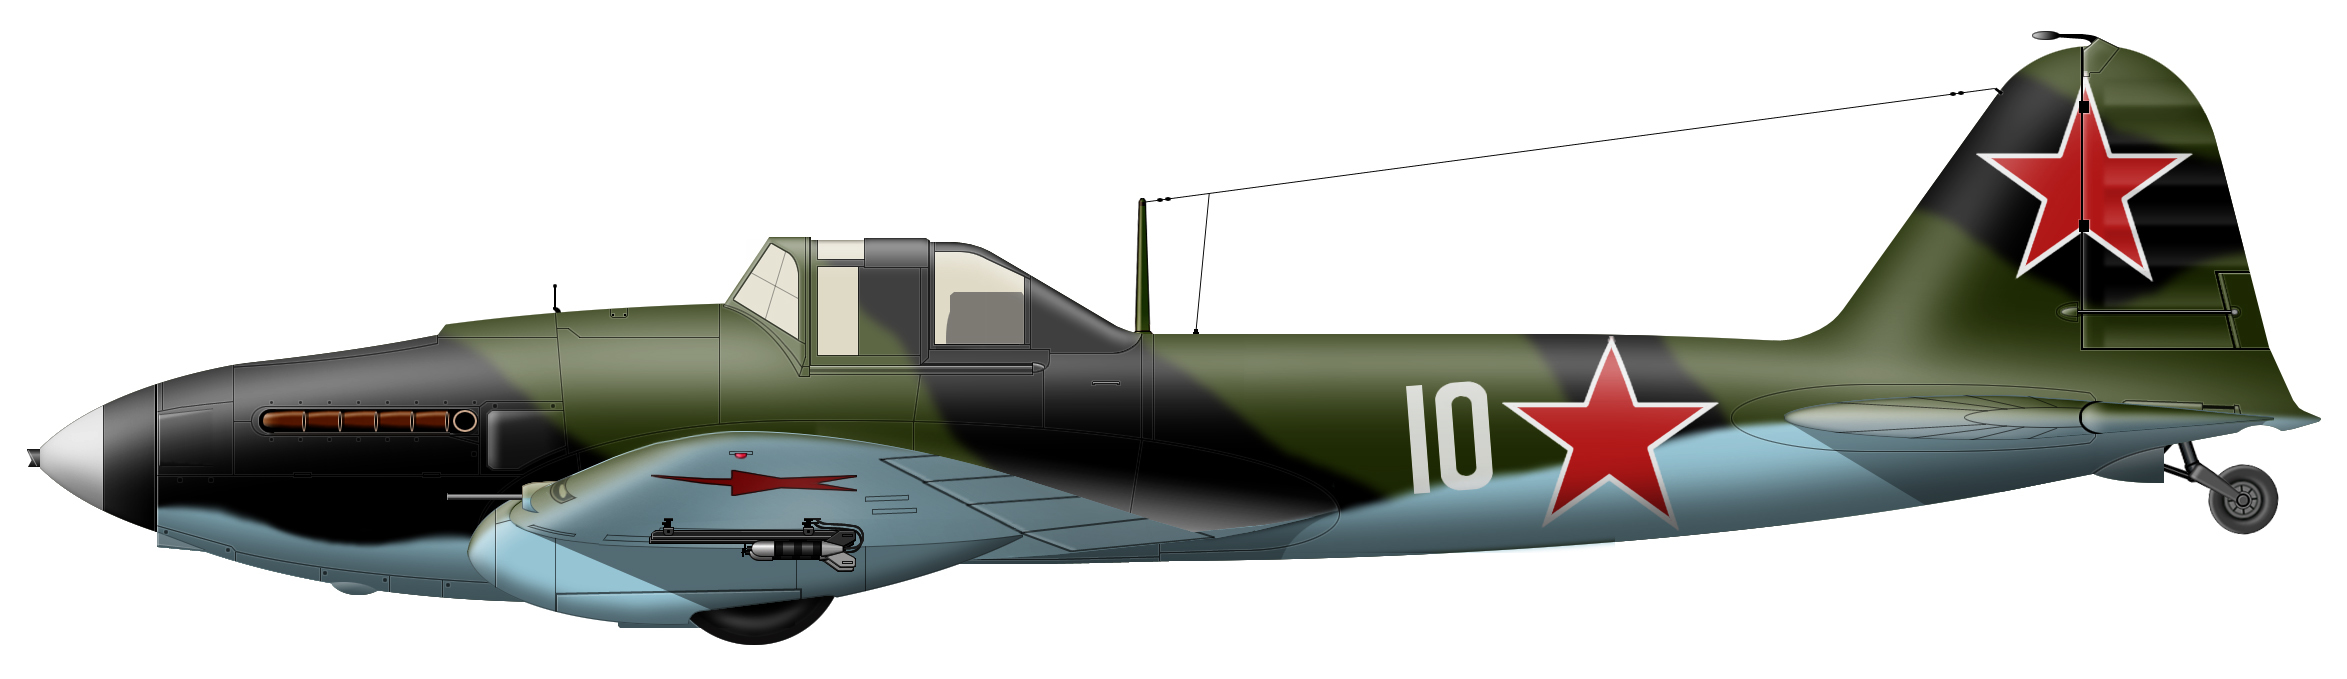 57 авп 8 авиац бр ВВС КБФ.